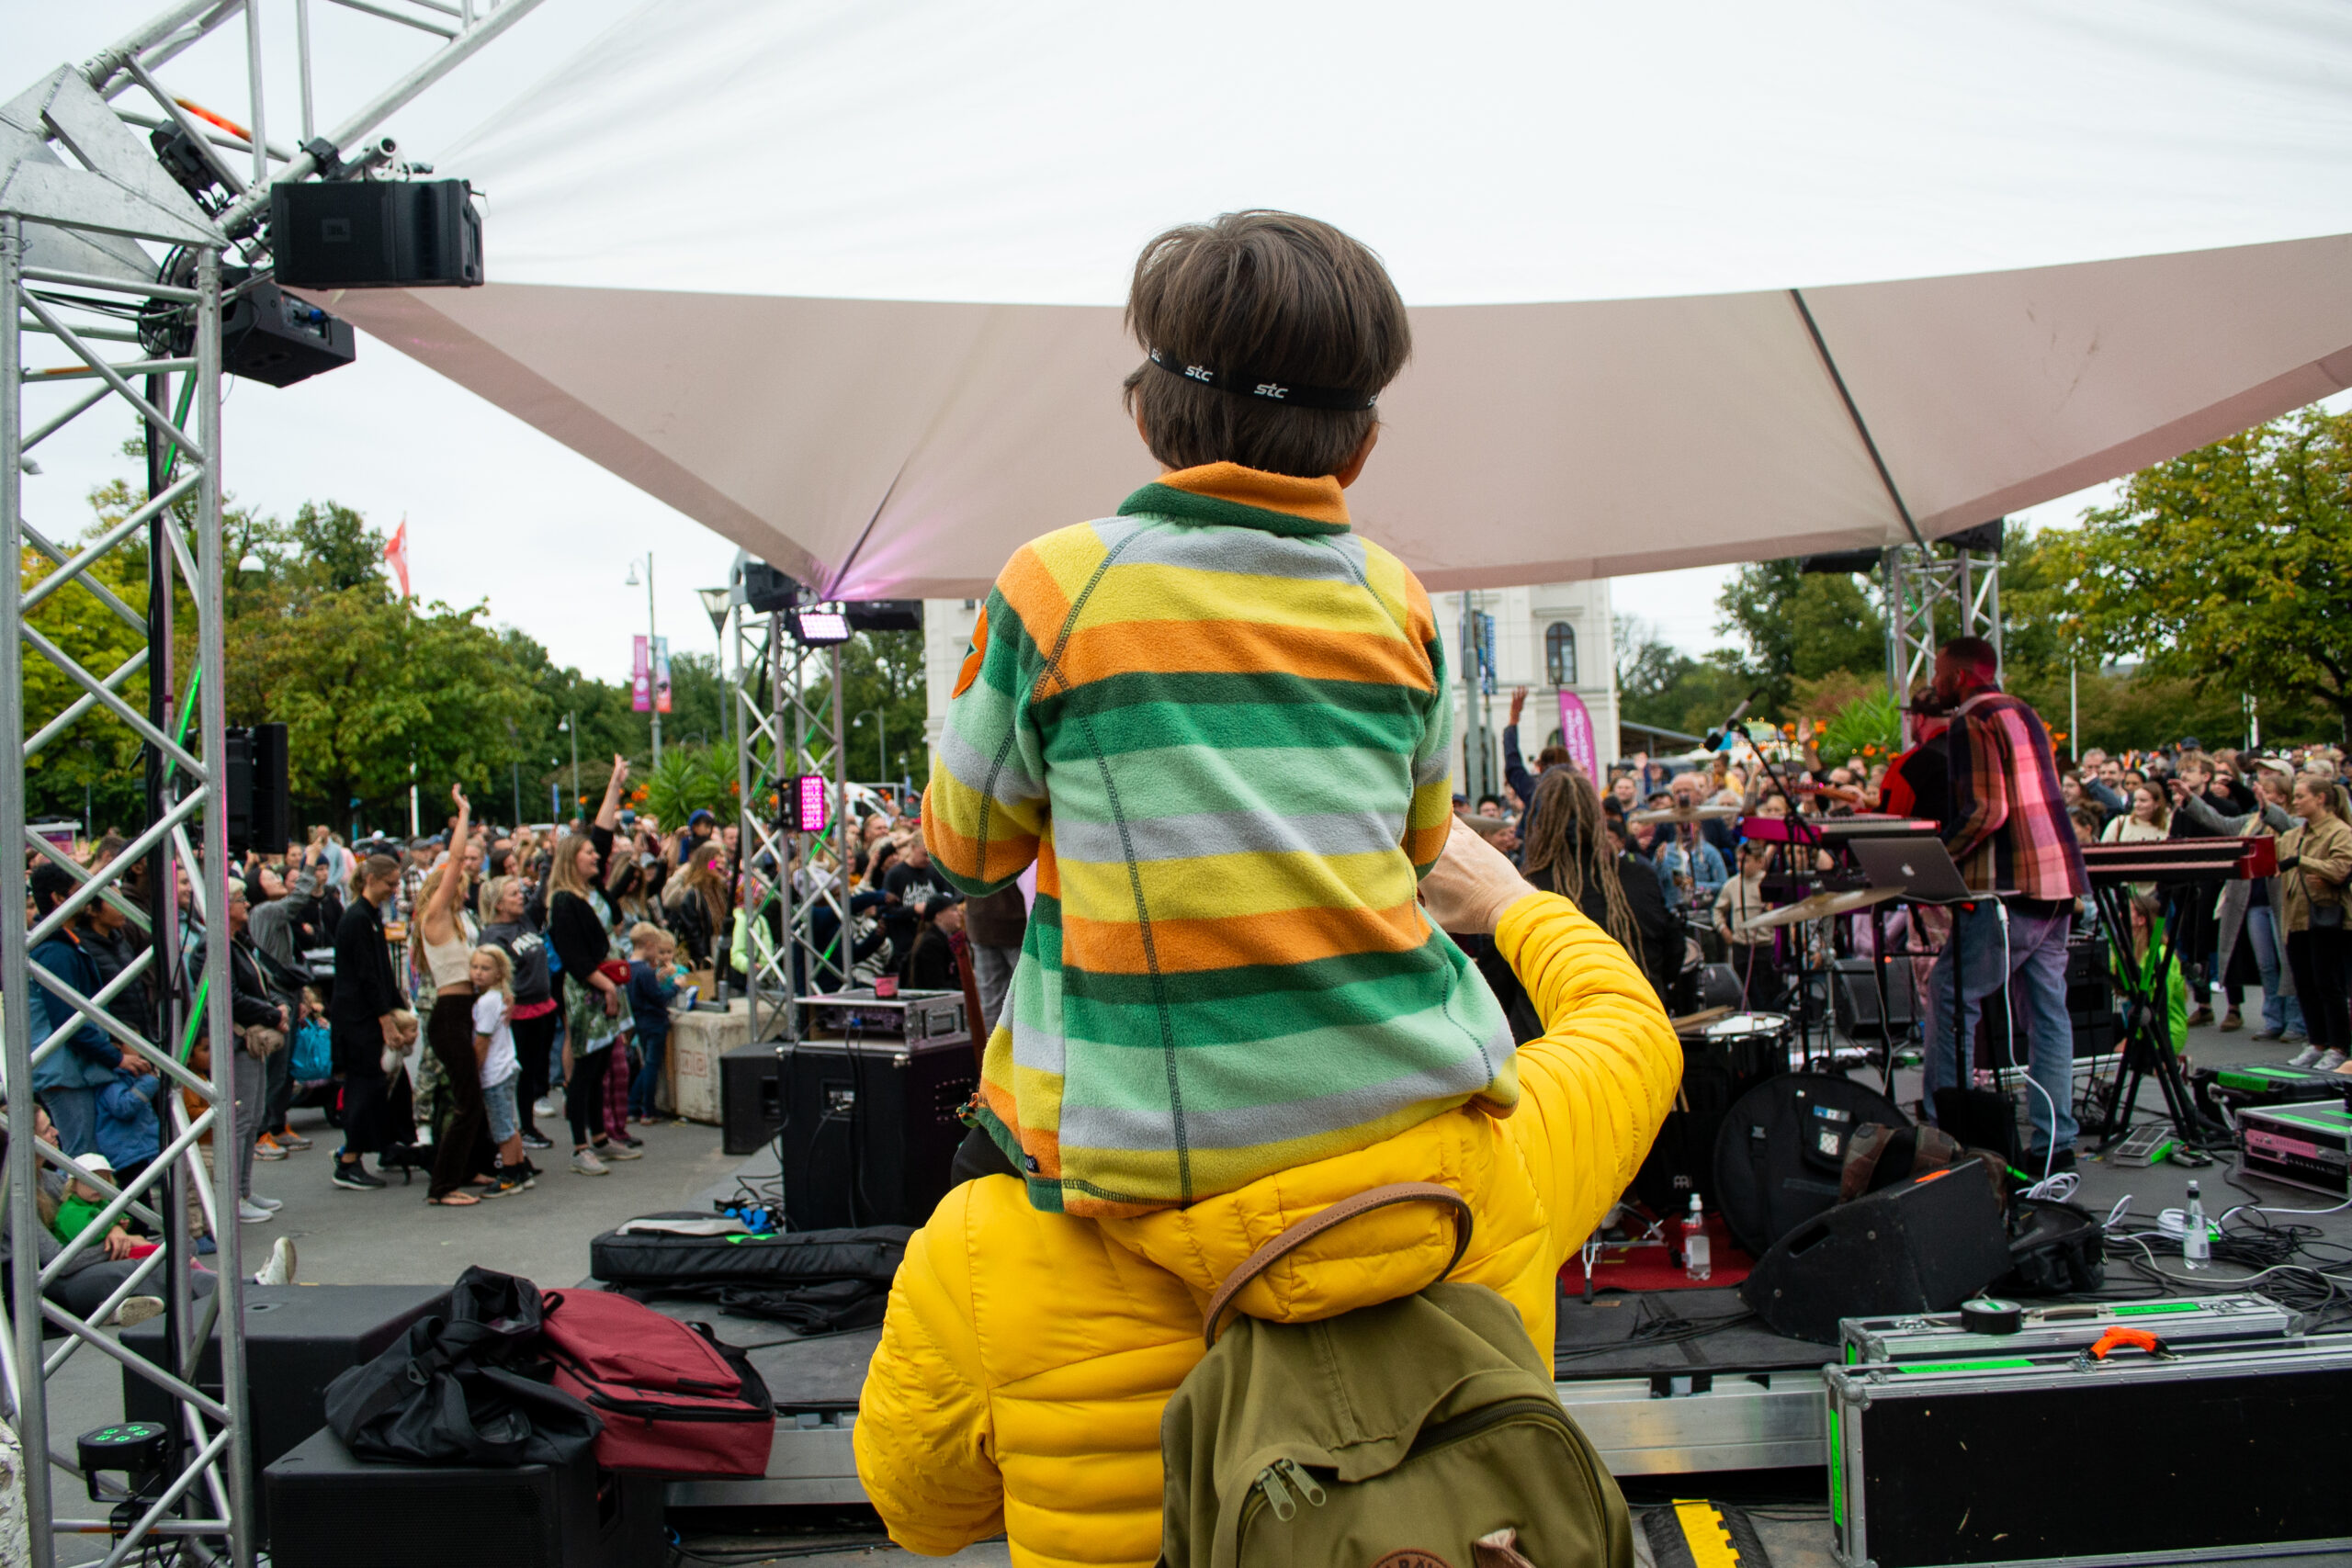 Ett barn sitter på en vuxens axlar och tittar på en konsert i Bältespännarparken. Deras ryggar är vända mot kameran. Barnet har en tröja med gula, gröna och vita ränder och dens hår är mörkbrunt. Den vuxne har på sig en gul tröja och mossgrön ryggsäck.